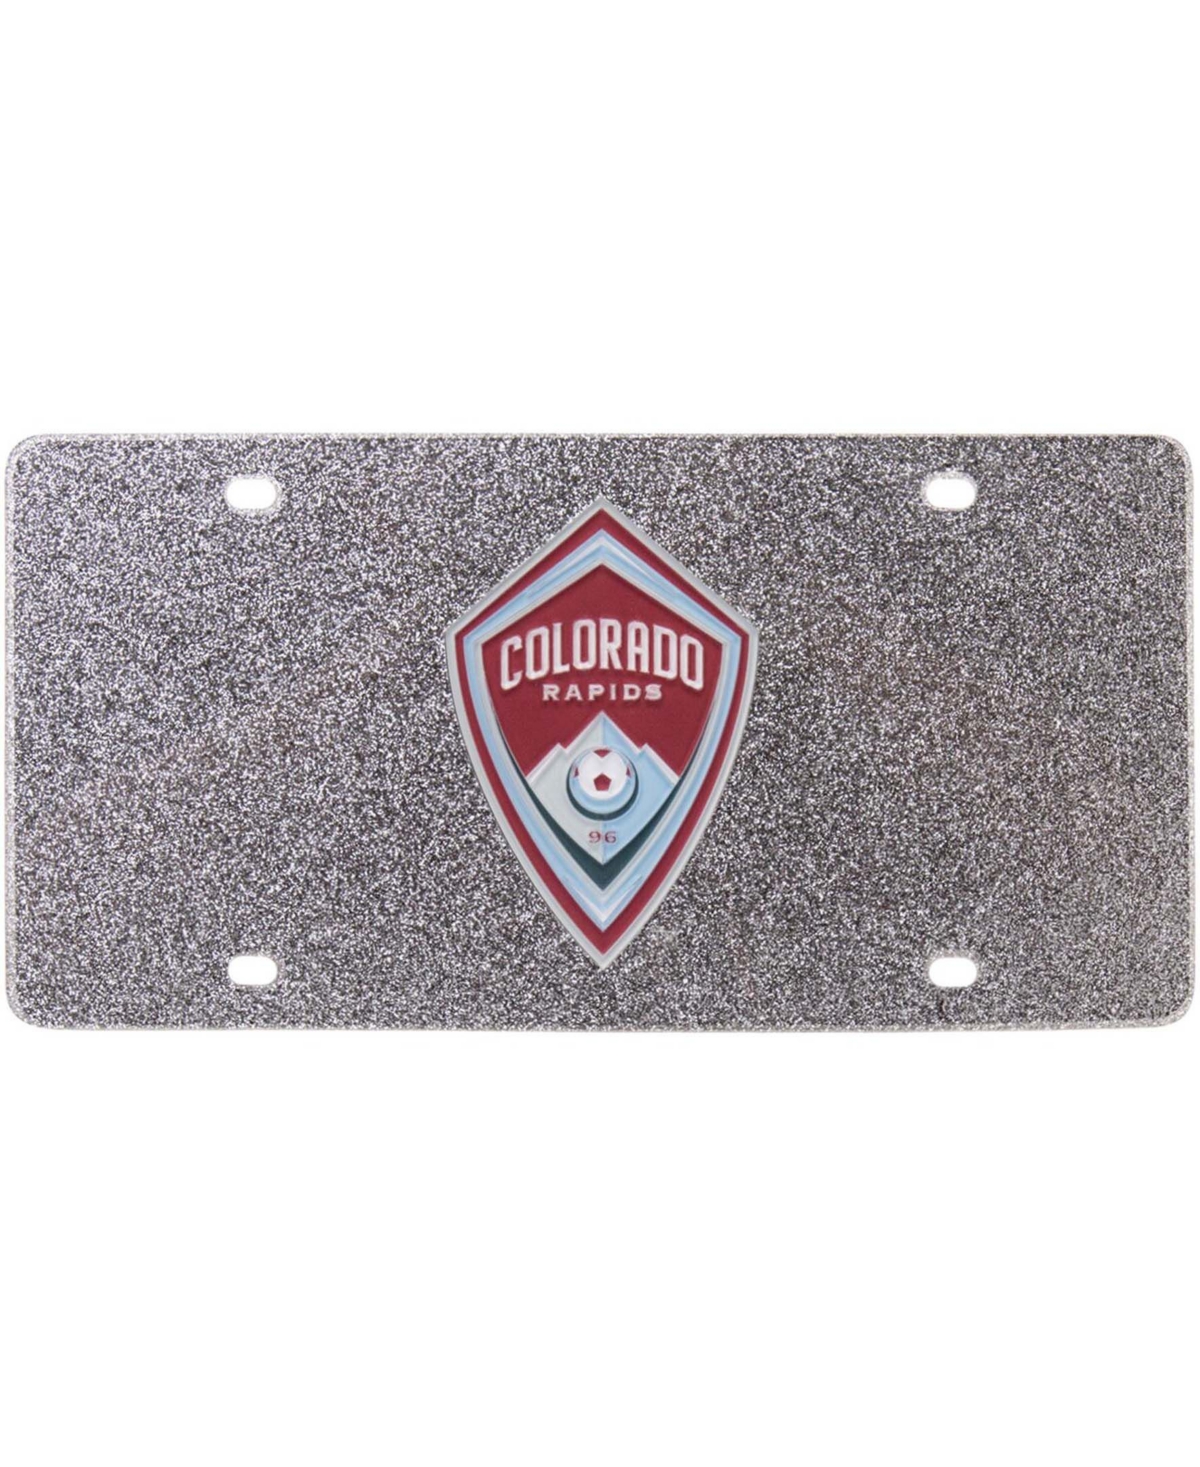 Multi Colorado Rapids Acrylic Glitter License Plate - Multi